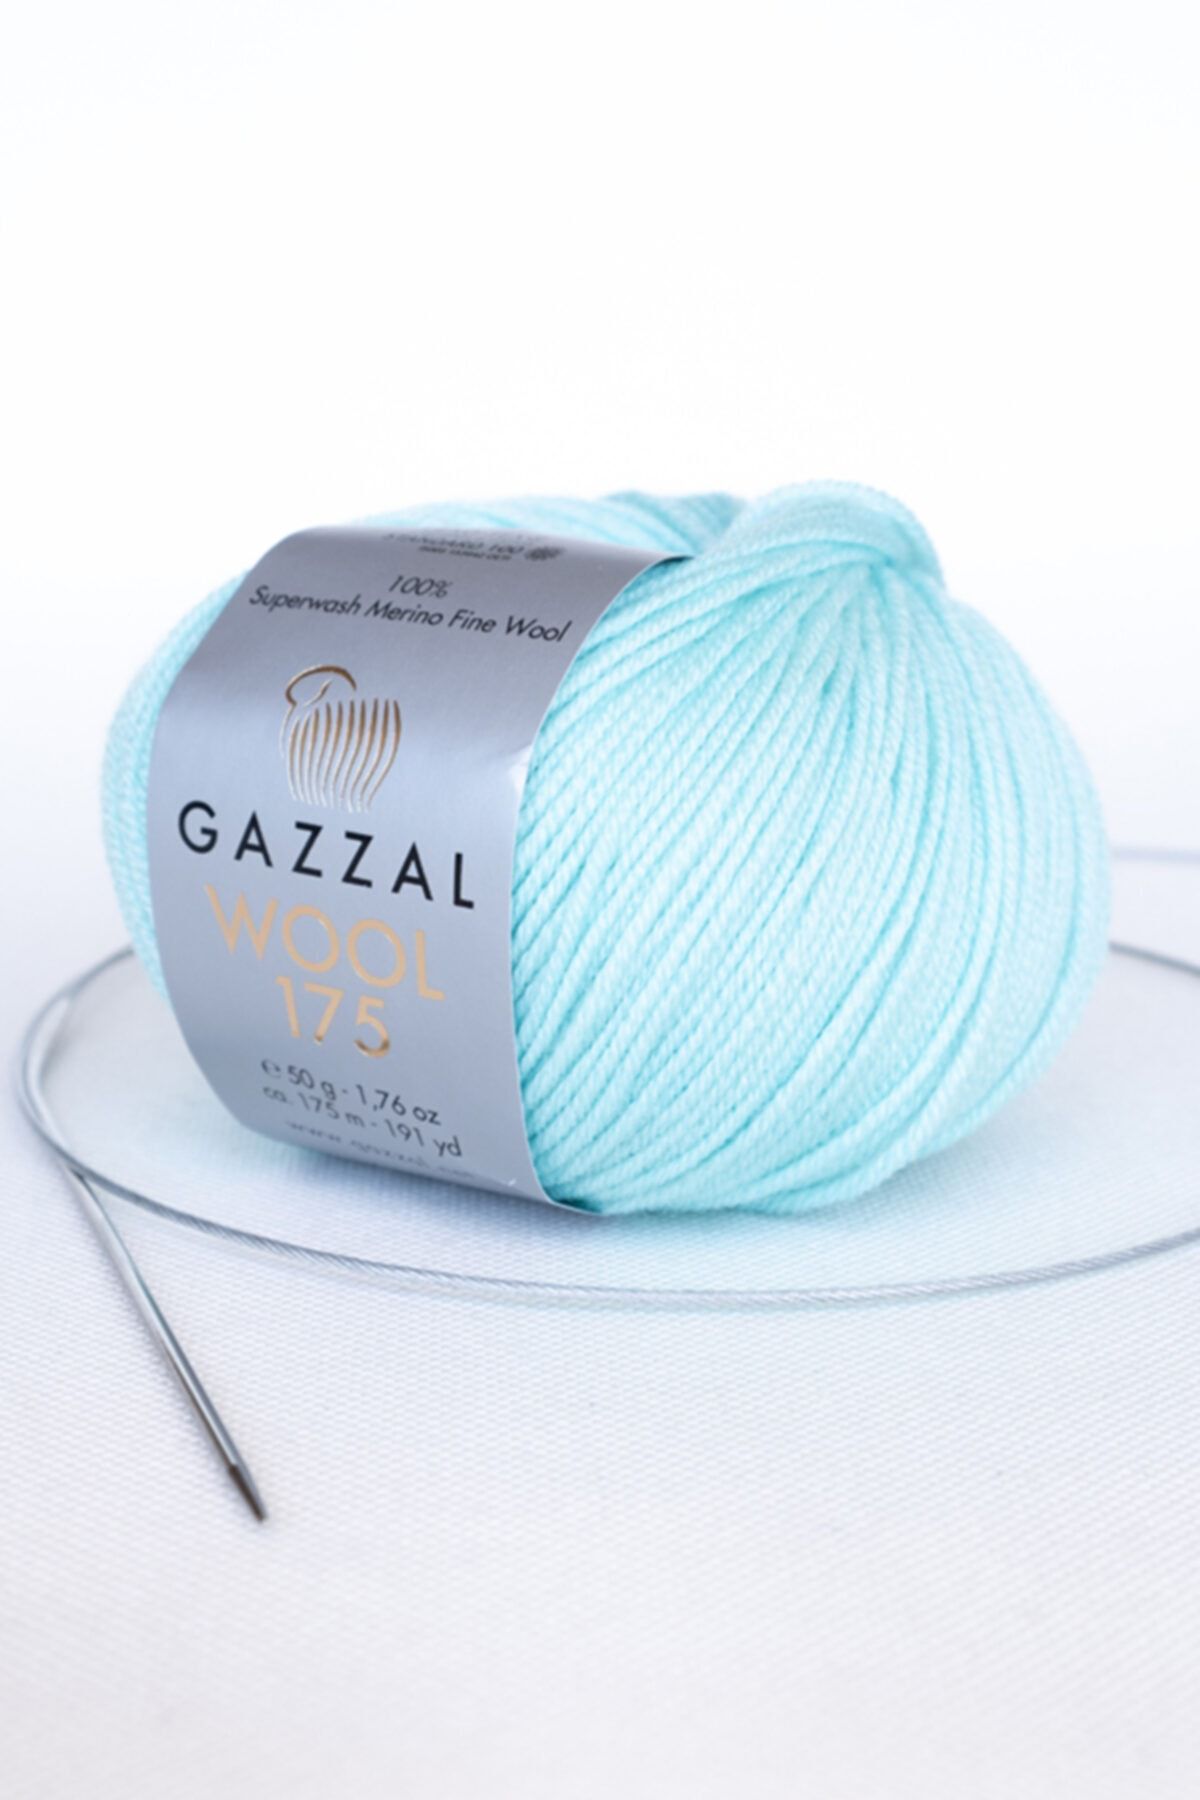 Gazzal Wool 175 Super Yıkama %100 Merinos Birinci Sınıf Yün El Örgü Ipi 50 gr (321)